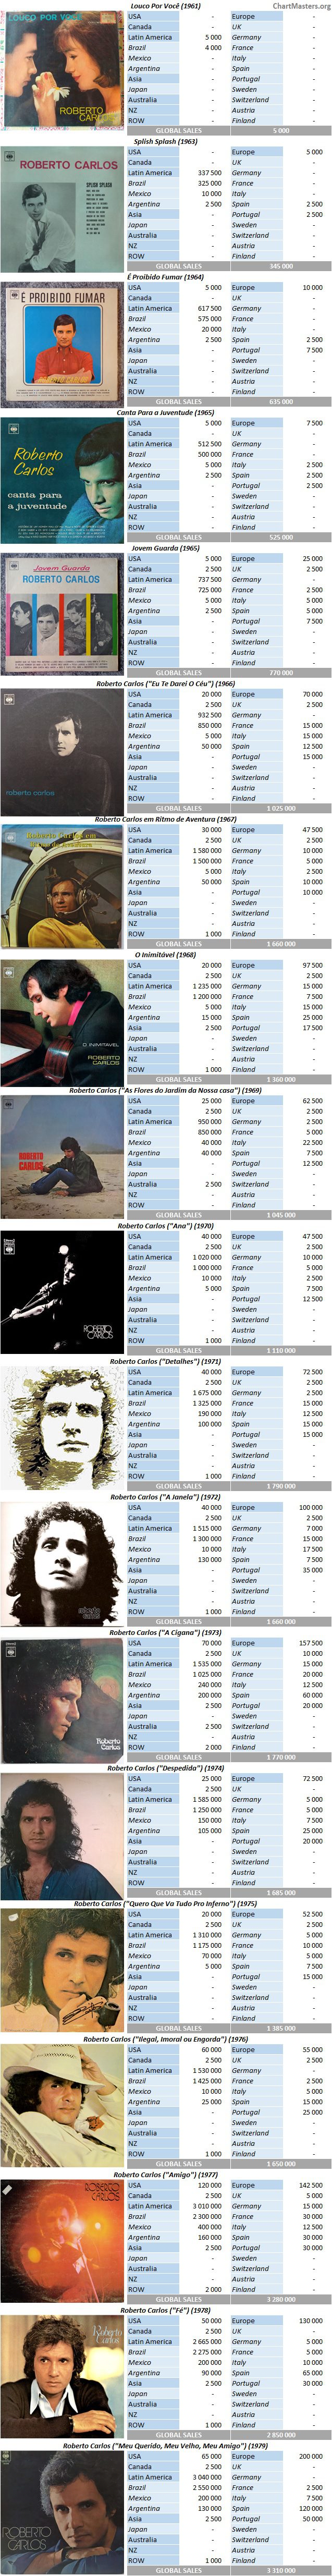 CSPC Roberto Carlos album sales breakdown 60s 70s